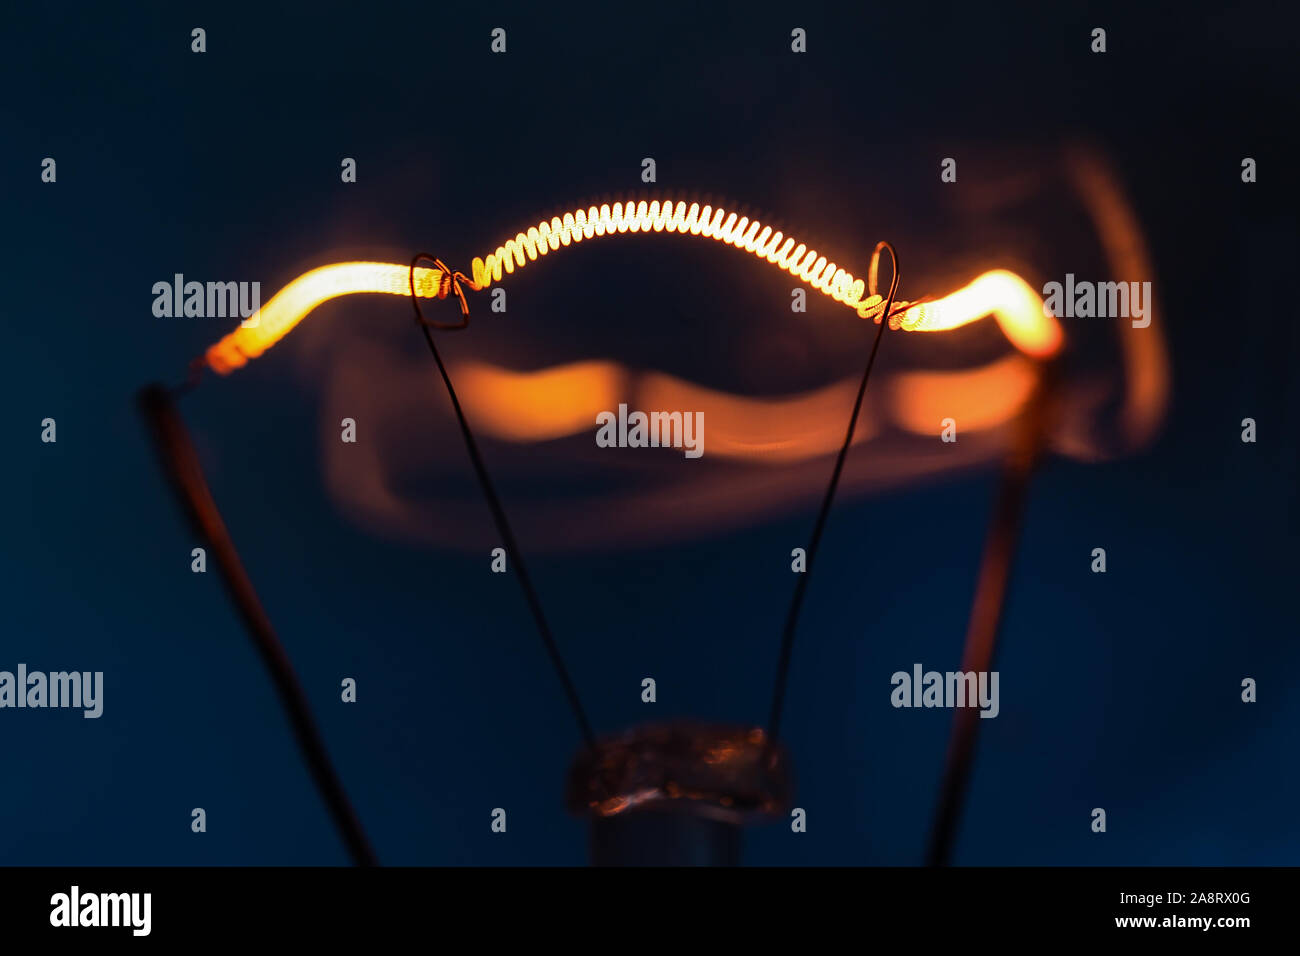 Leuchtende Glühlampe Glühlampe close-up auf dunkelblauem Hintergrund Stockfoto